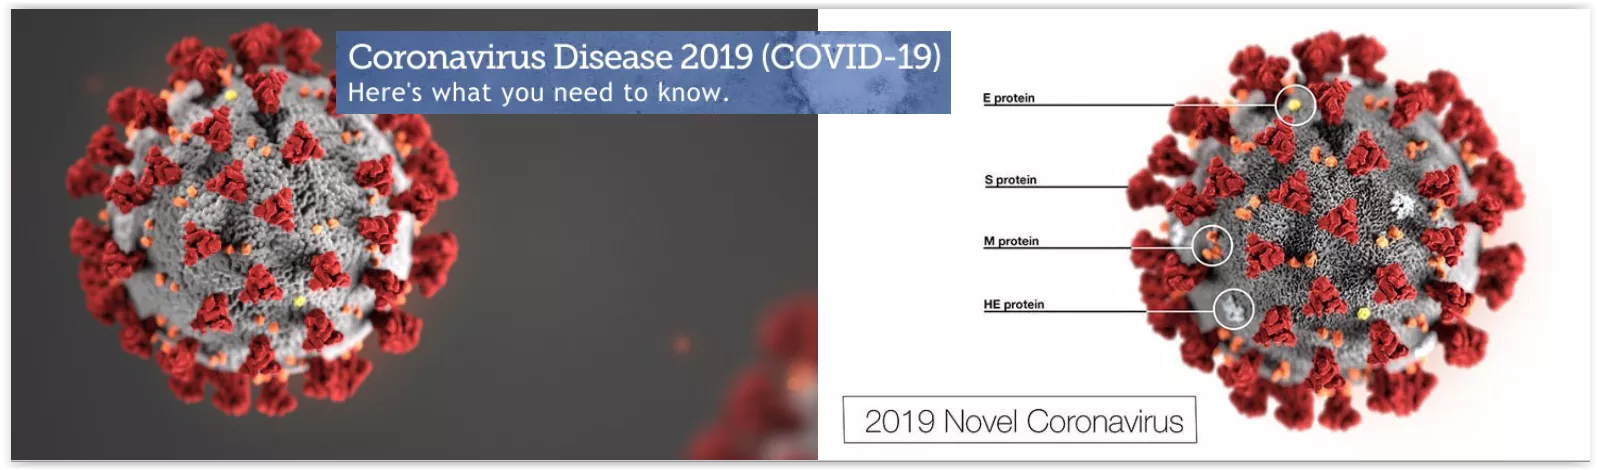 Coronavirus Banner Image1